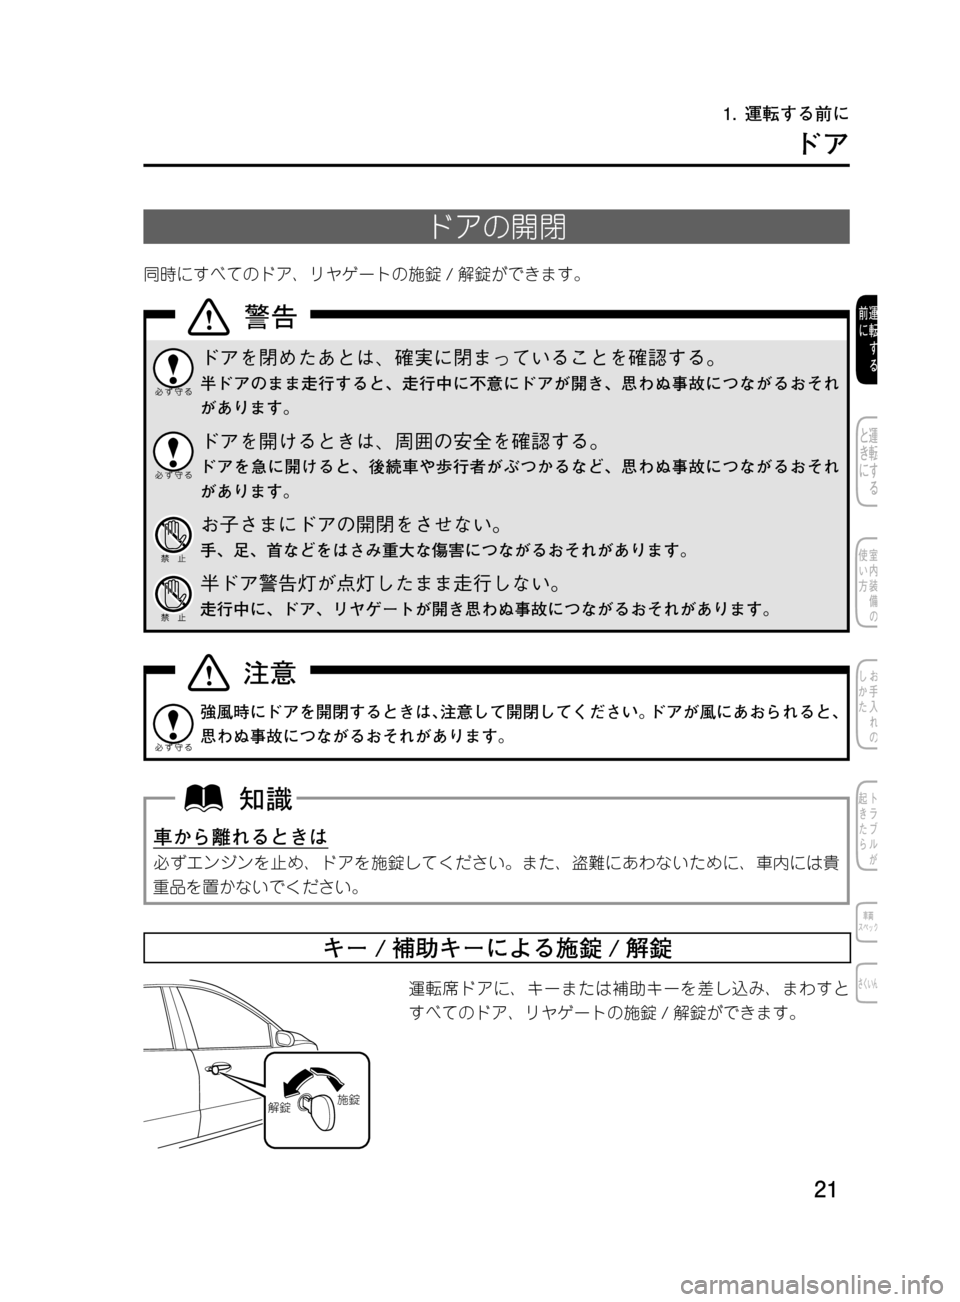 MAZDA MODEL DEMIO 2011  デミオ｜取扱説明書 (in Japanese) ��
��P�S�N��/�P���% 